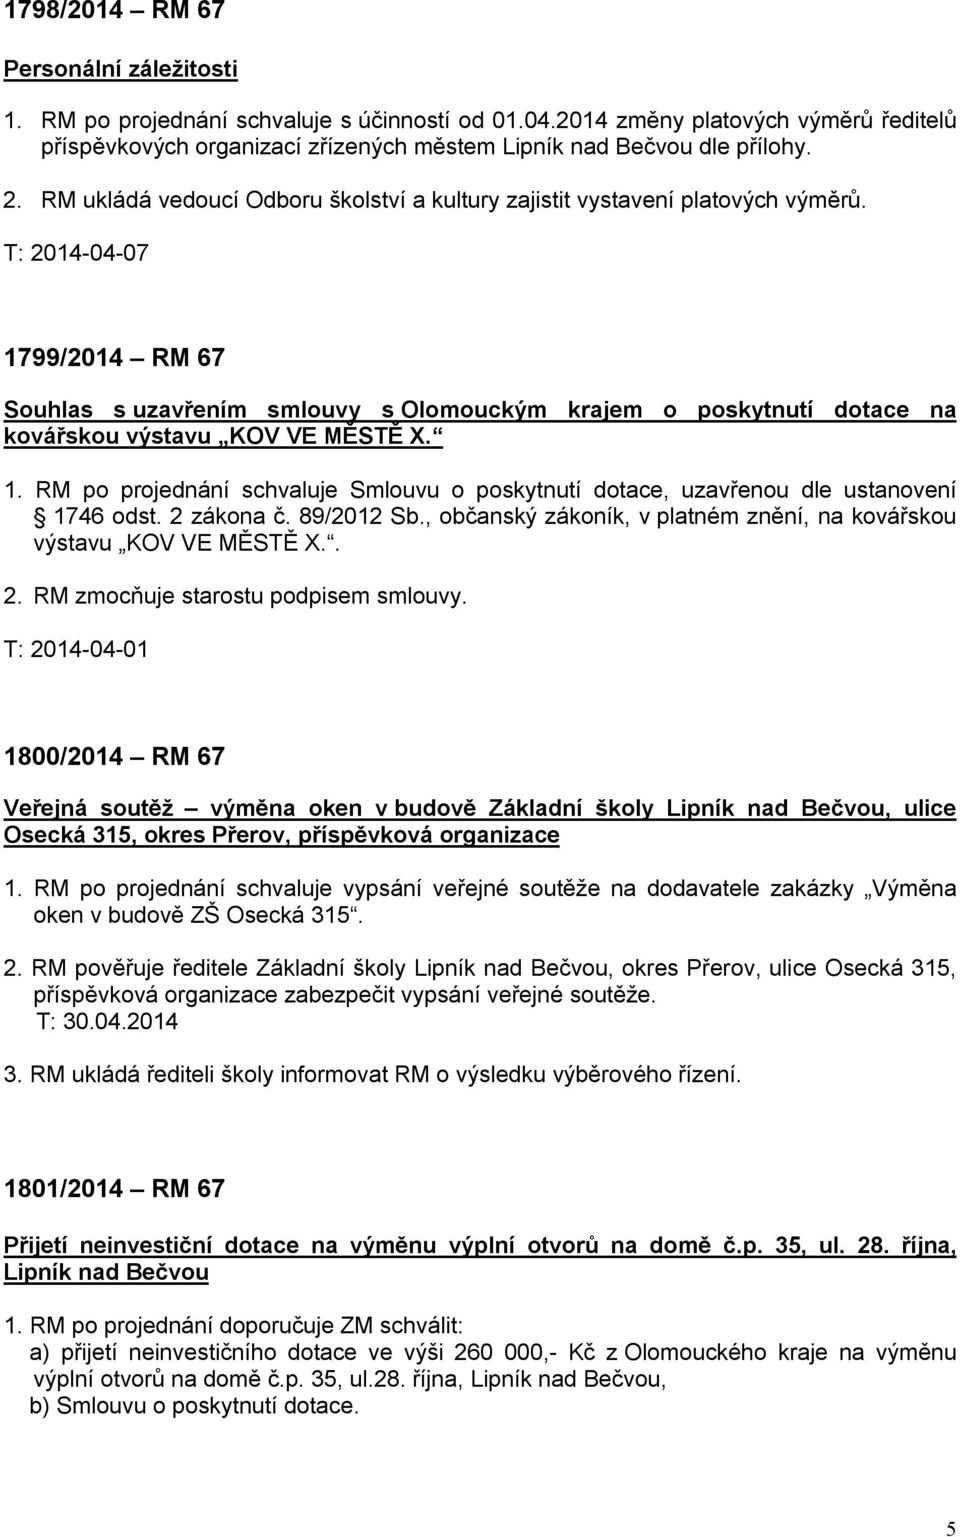 T: 2014-04-07 1799/2014 RM 67 Souhlas s uzavřením smlouvy s Olomouckým krajem o poskytnutí dotace na kovářskou výstavu KOV VE MĚSTĚ X. 1. RM po projednání schvaluje Smlouvu o poskytnutí dotace, uzavřenou dle ustanovení 1746 odst.